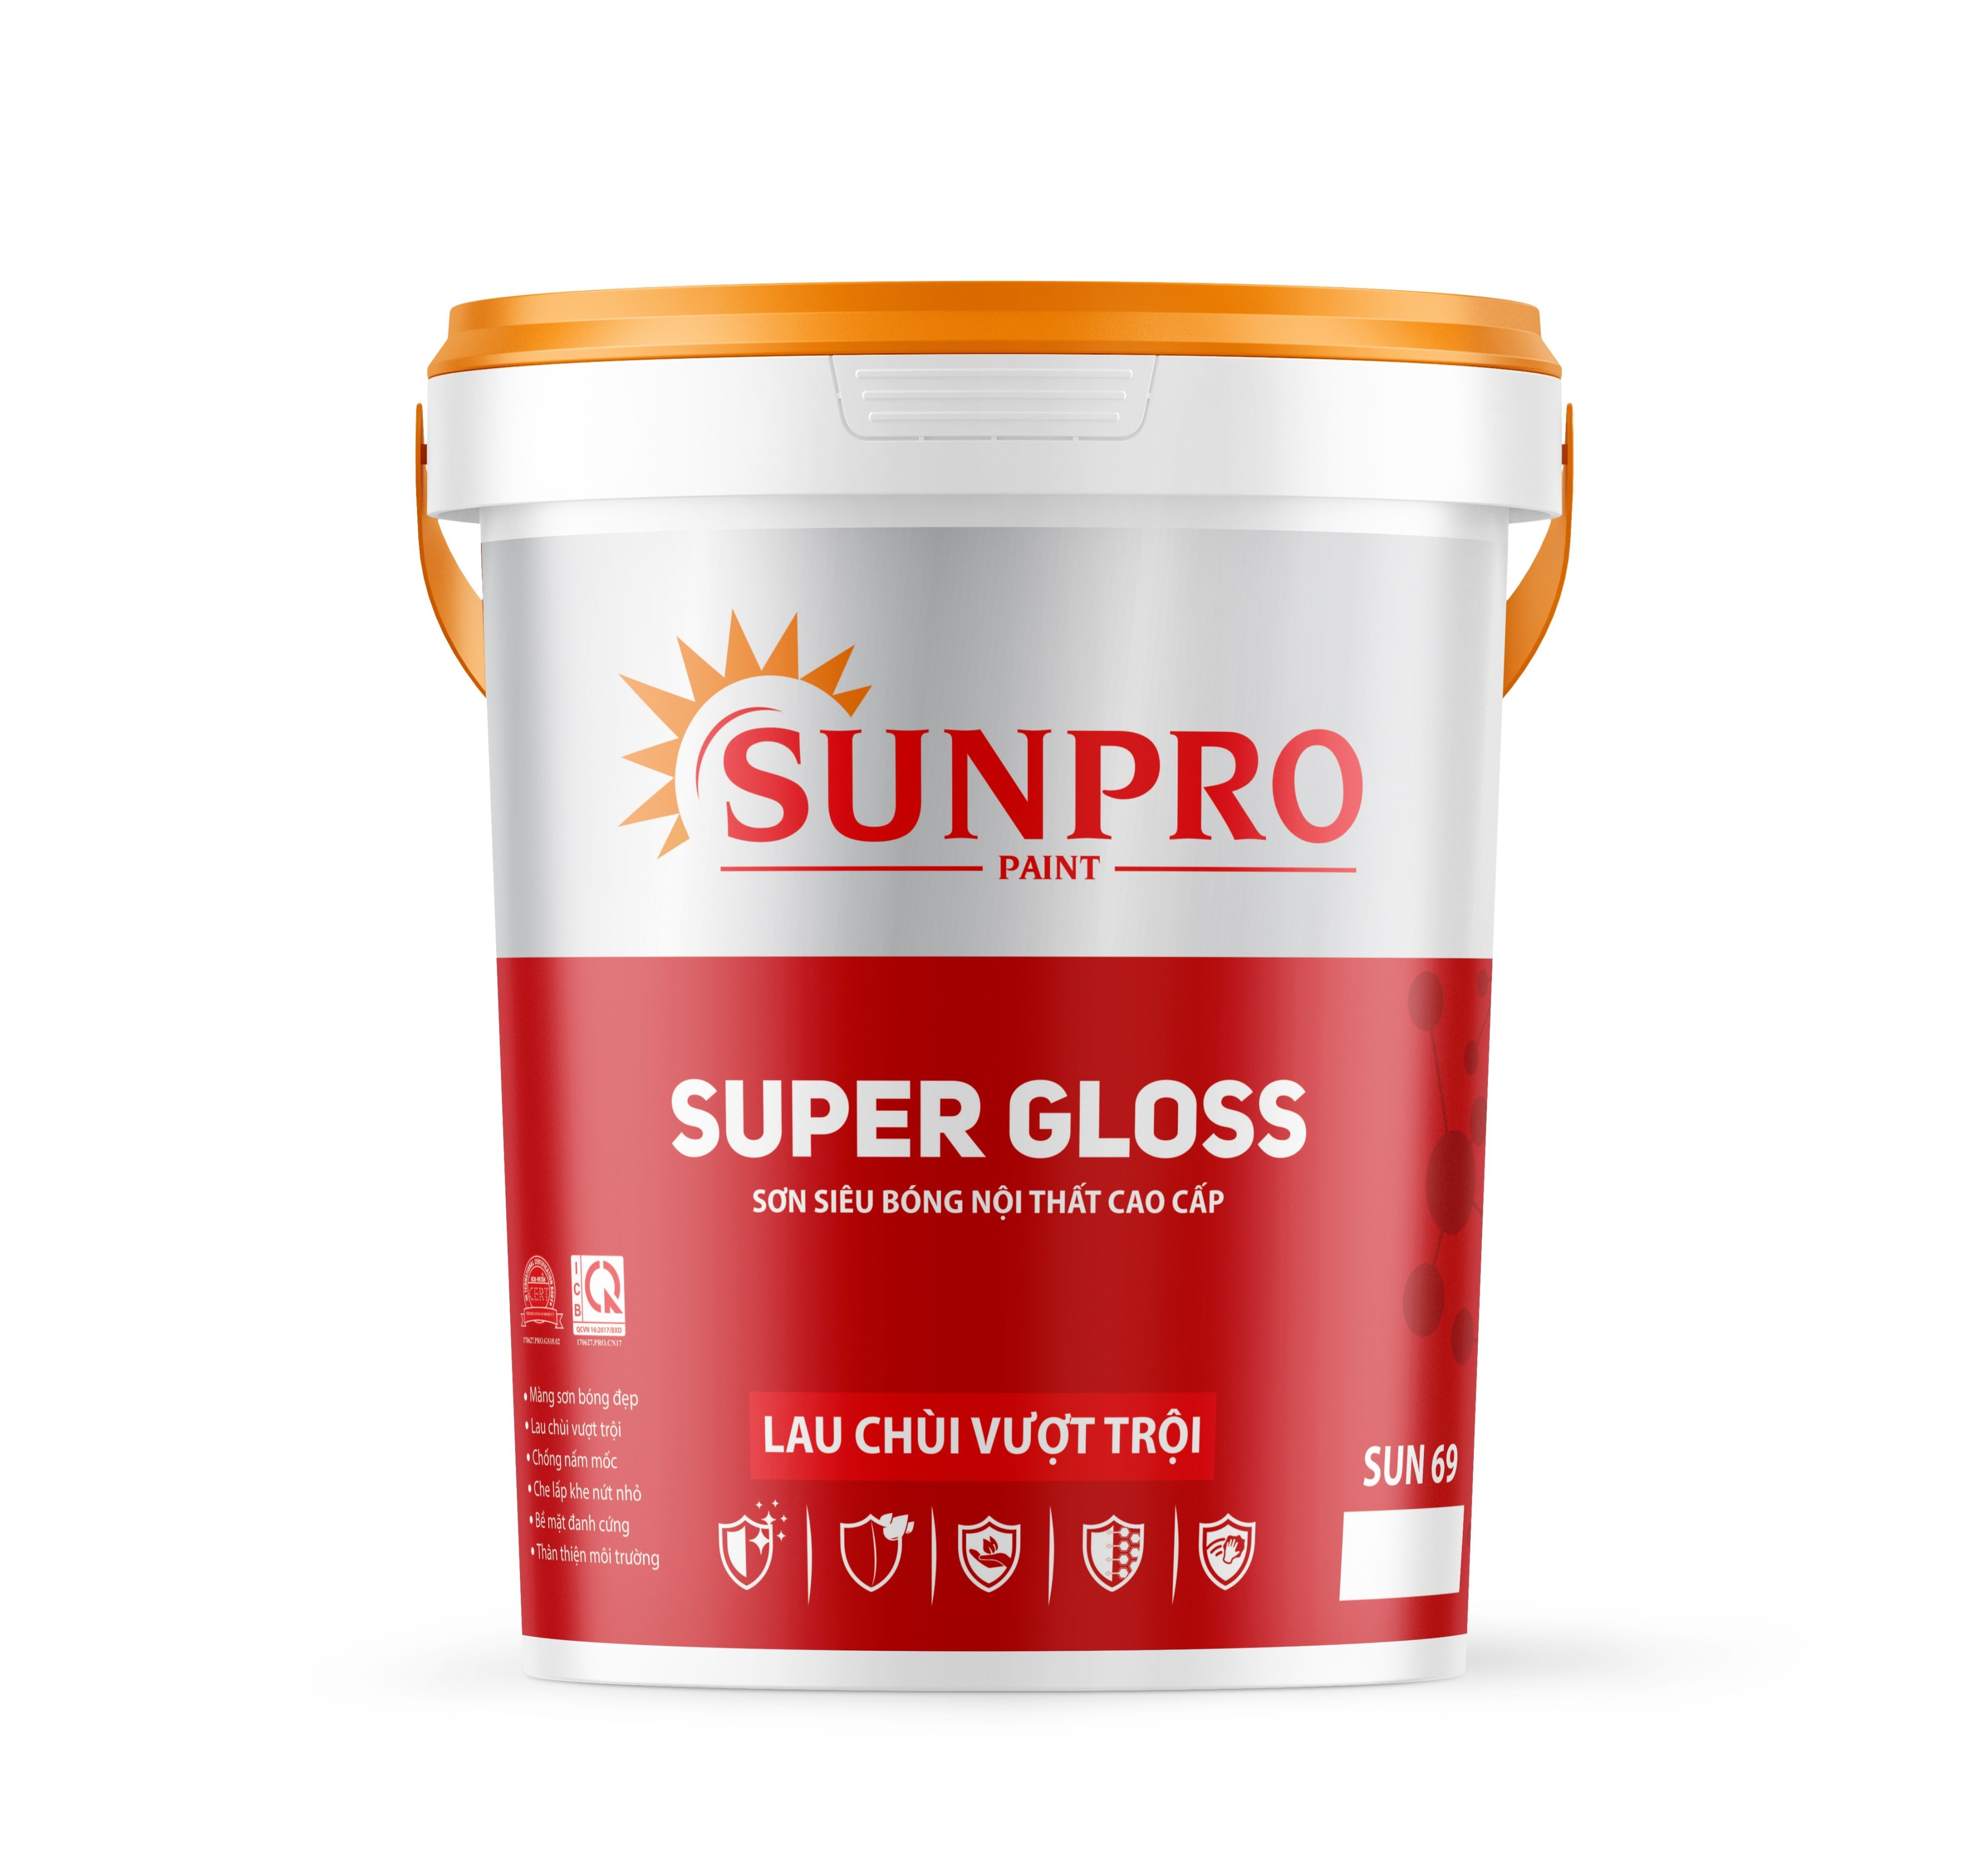 SUN69 - SUPER GLOSS Sơn siêu bóng nội thất cao cấp